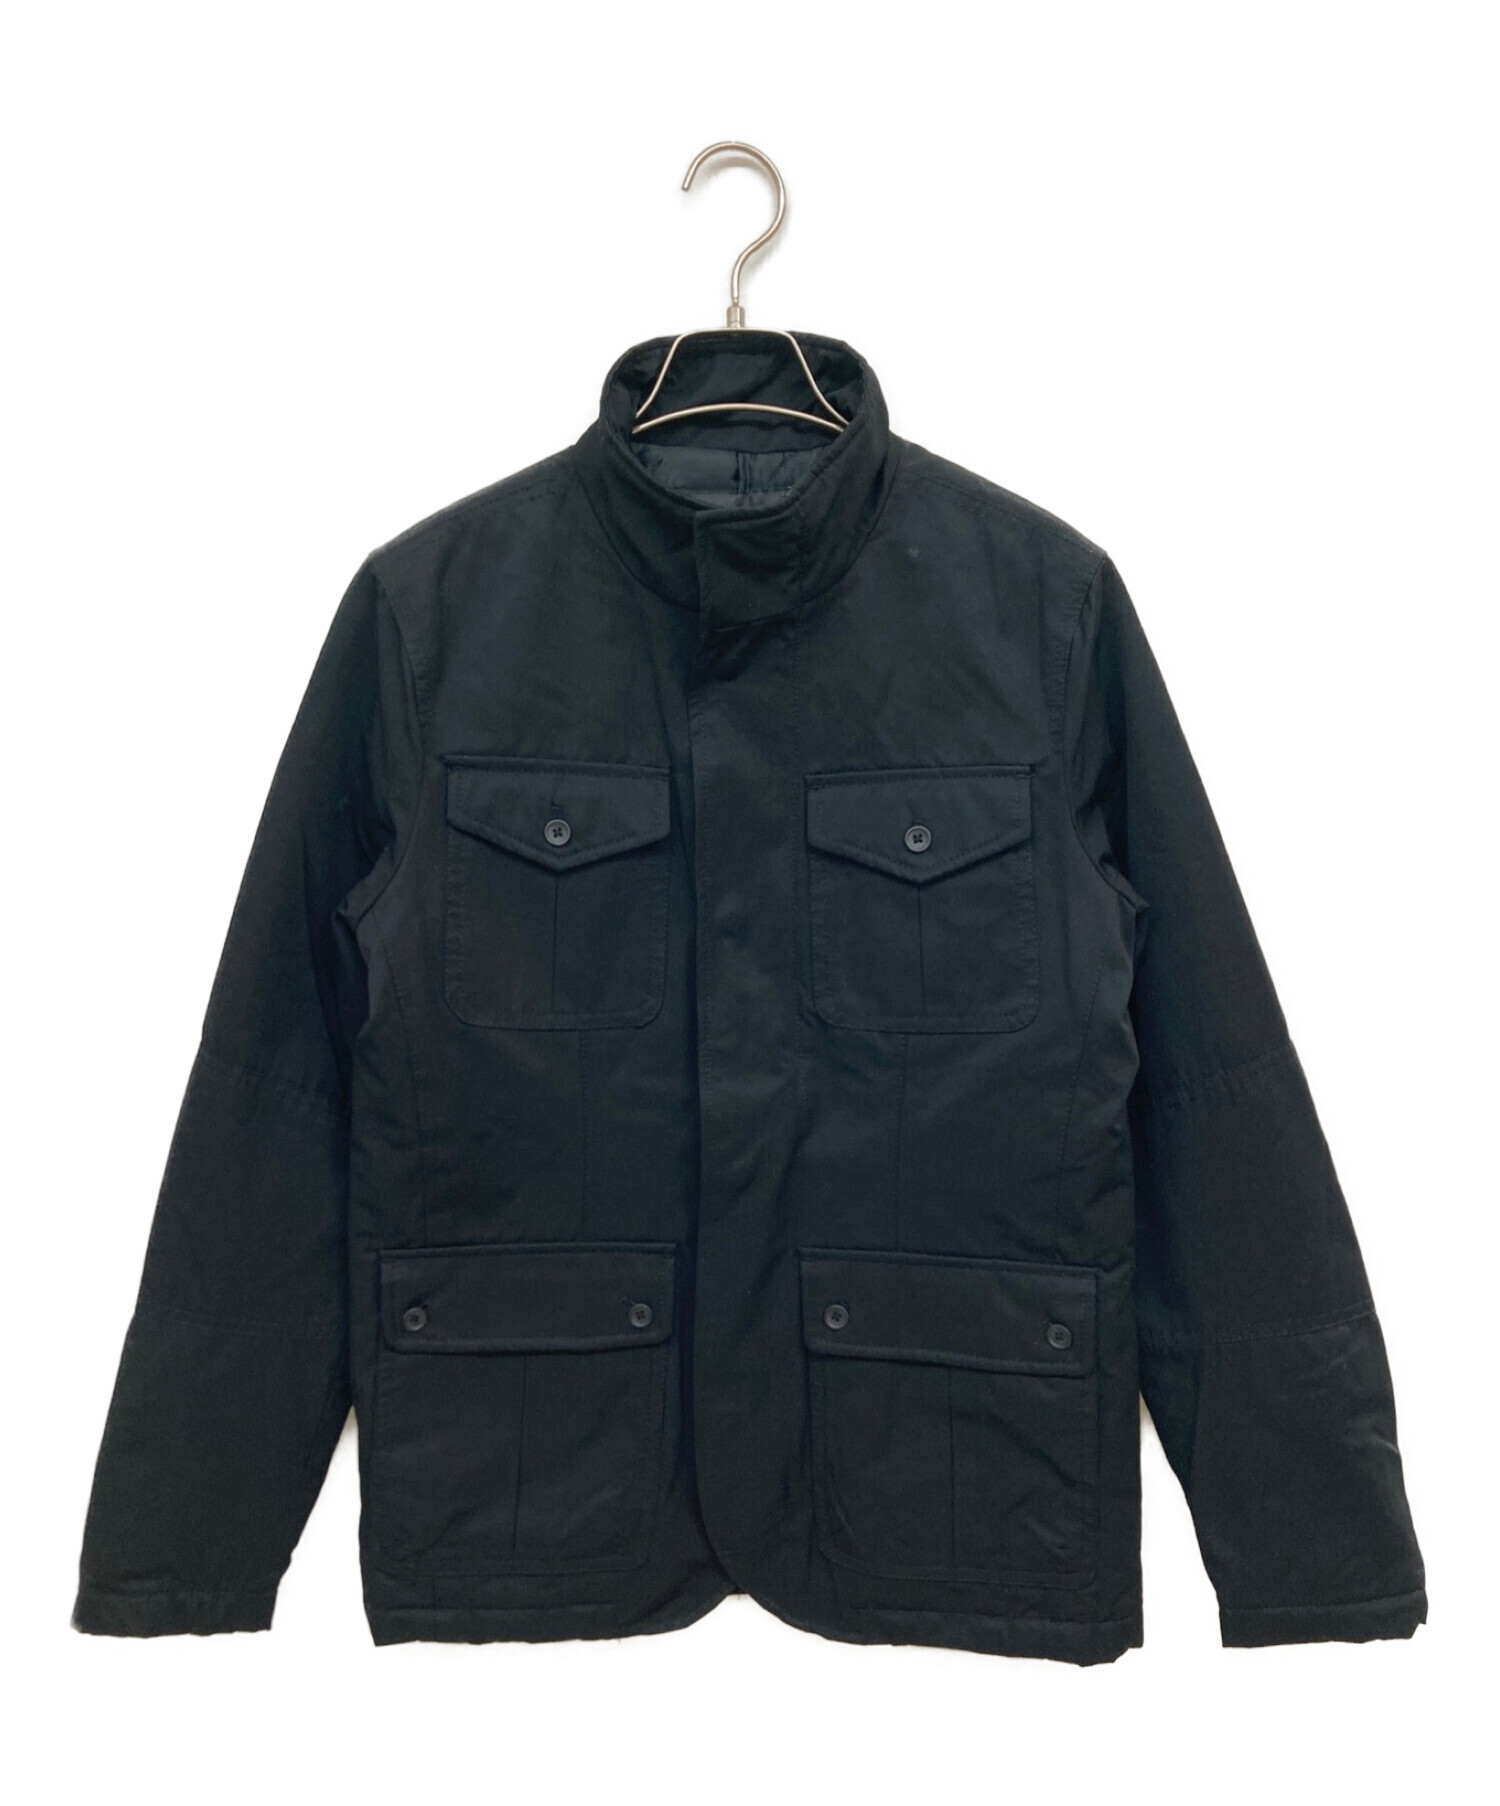 BANANA REPUBLIC (バナナリパブリック) 中綿ジャケット ブラック サイズ:SIZE S 未使用品